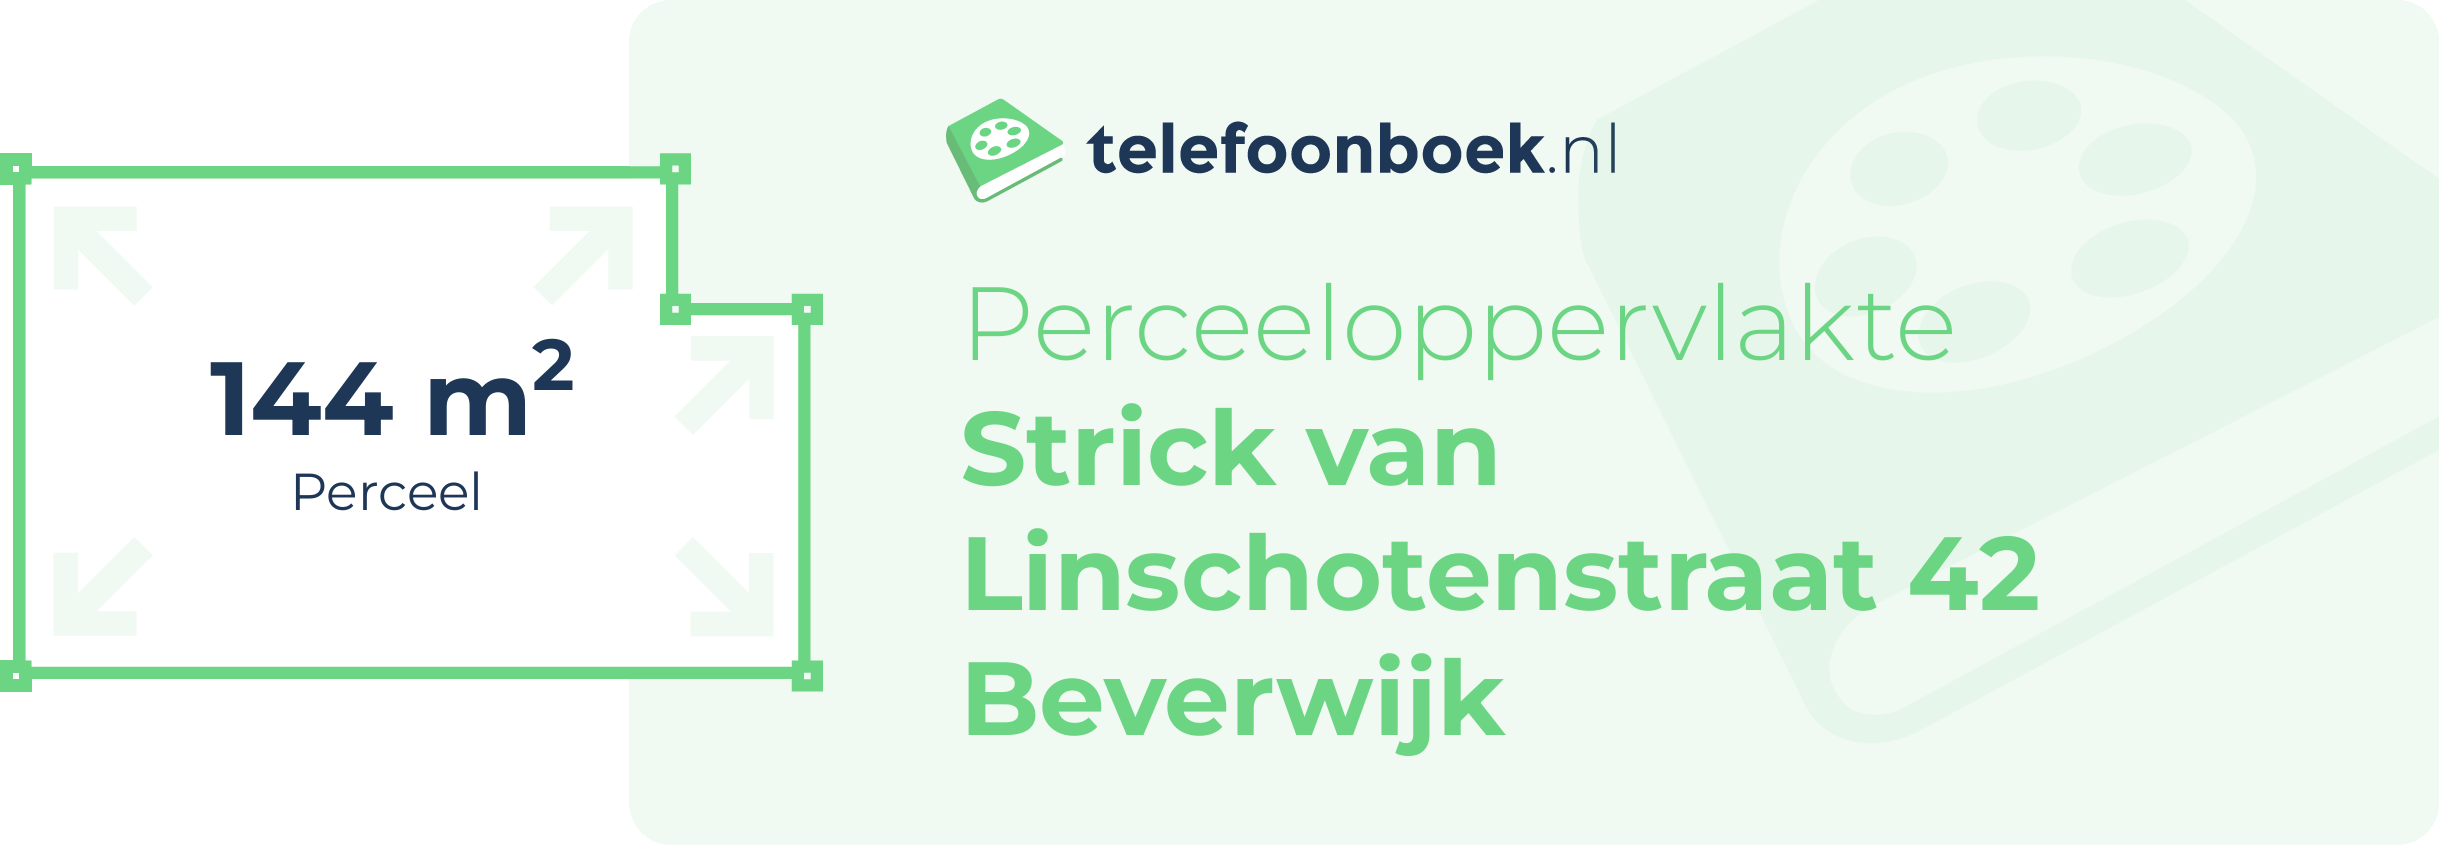 Perceeloppervlakte Strick Van Linschotenstraat 42 Beverwijk